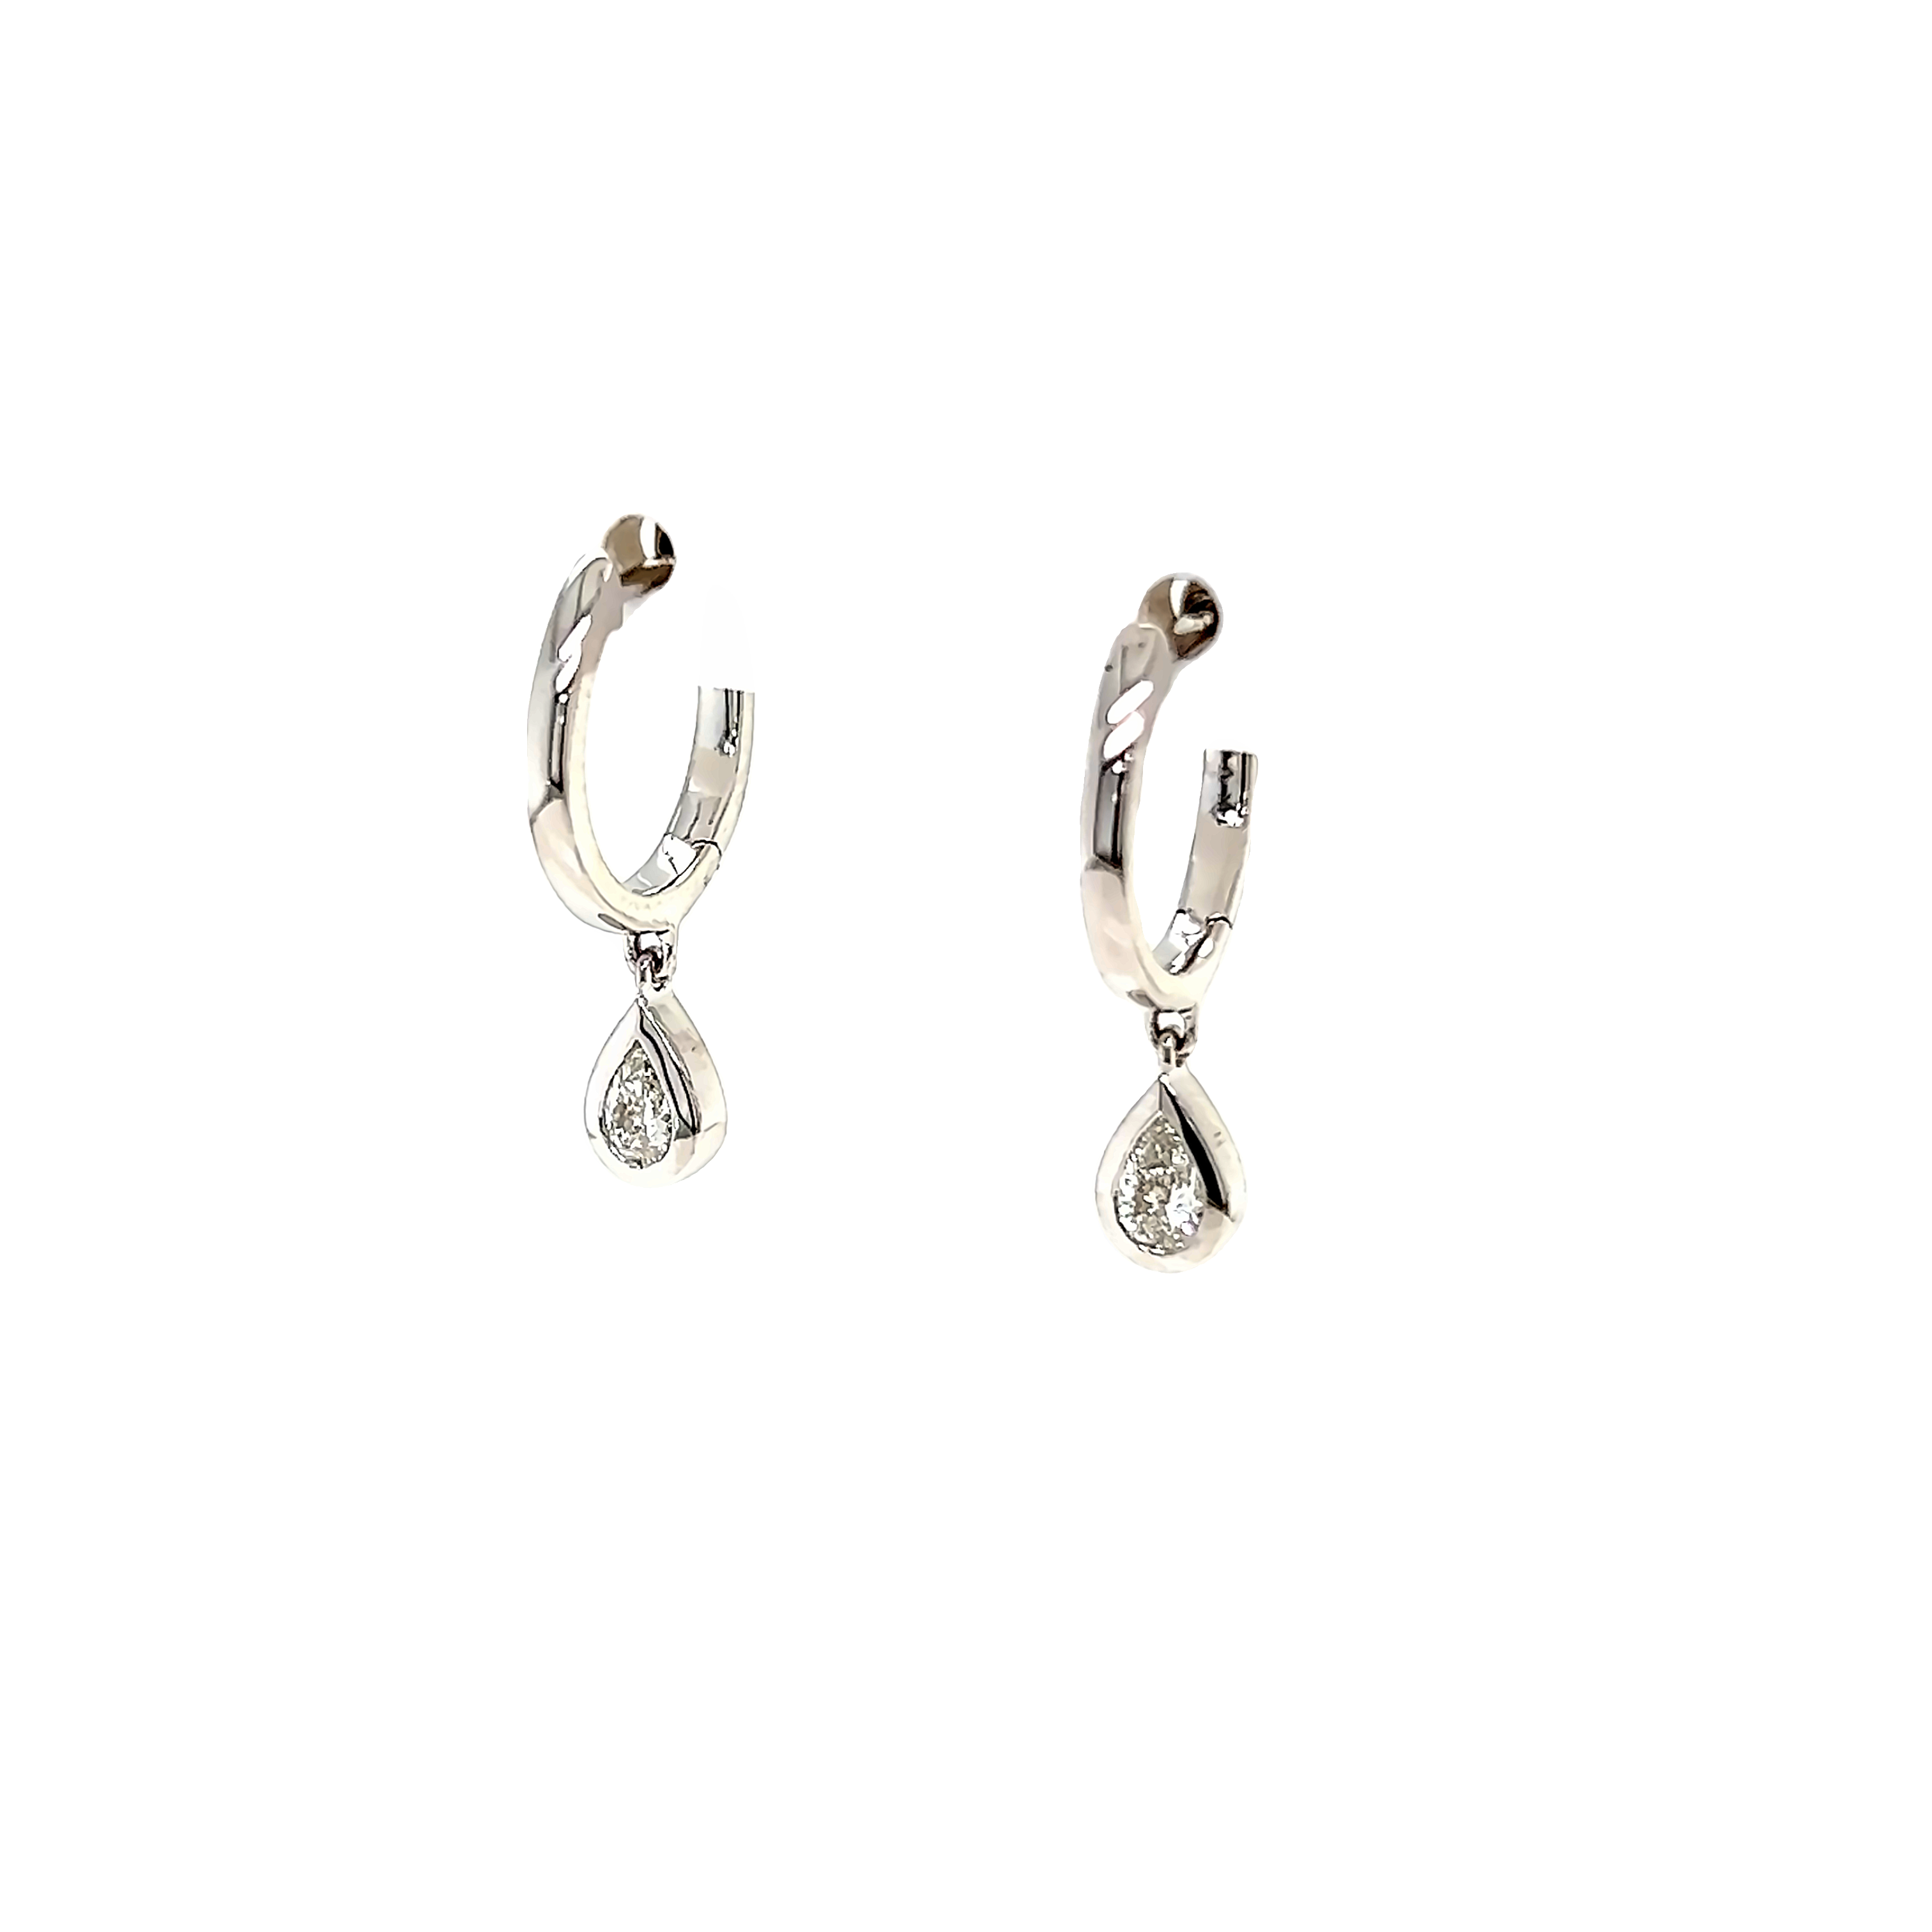 14k White Gold Diamond Dangle Earrings